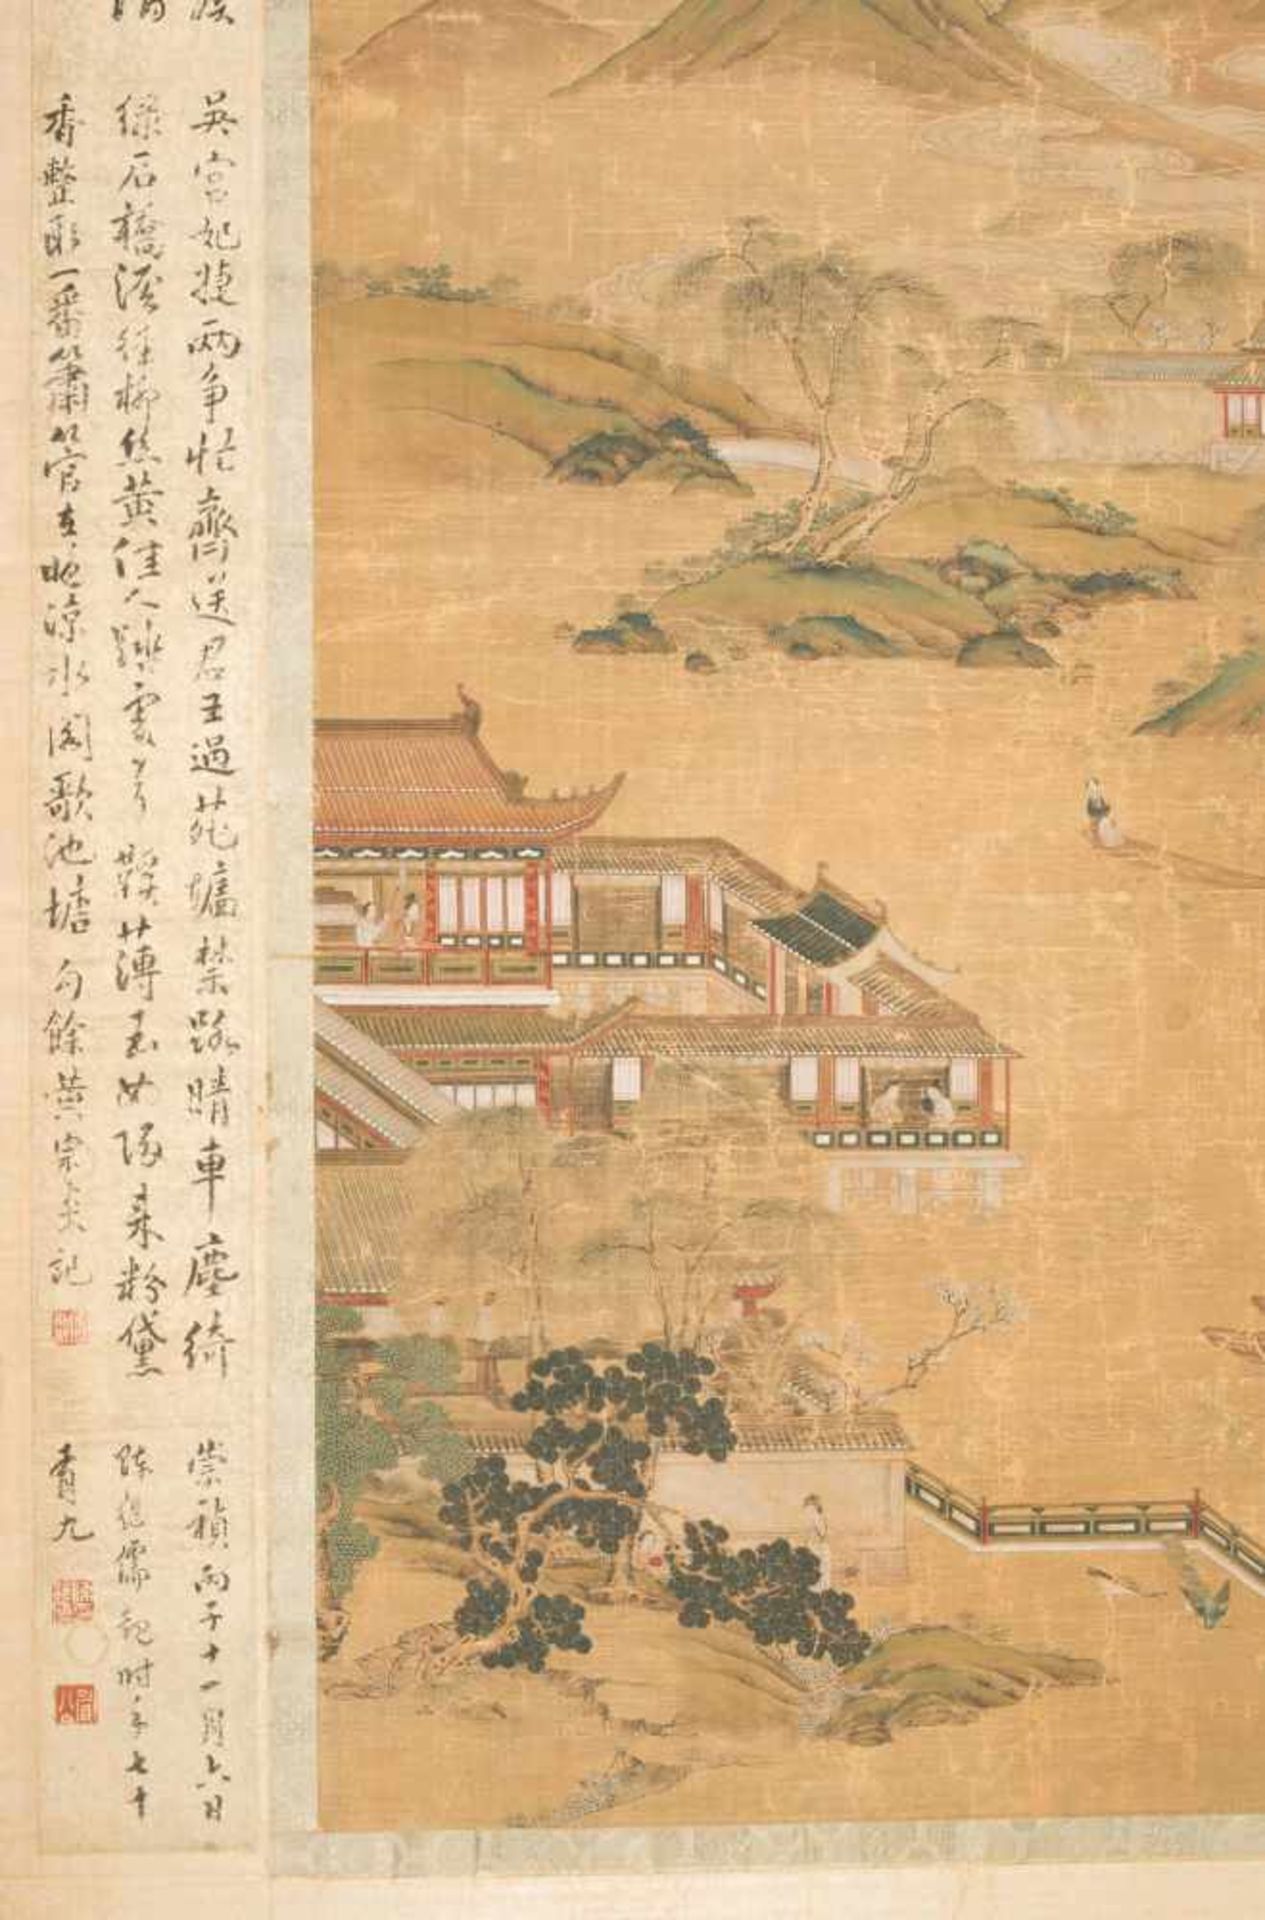 Malerei im Stil von Zhao Boju (c.1120–c.1185)China, Qing-Dynastie. Tusche und Farben auf Seide. - Bild 7 aus 10